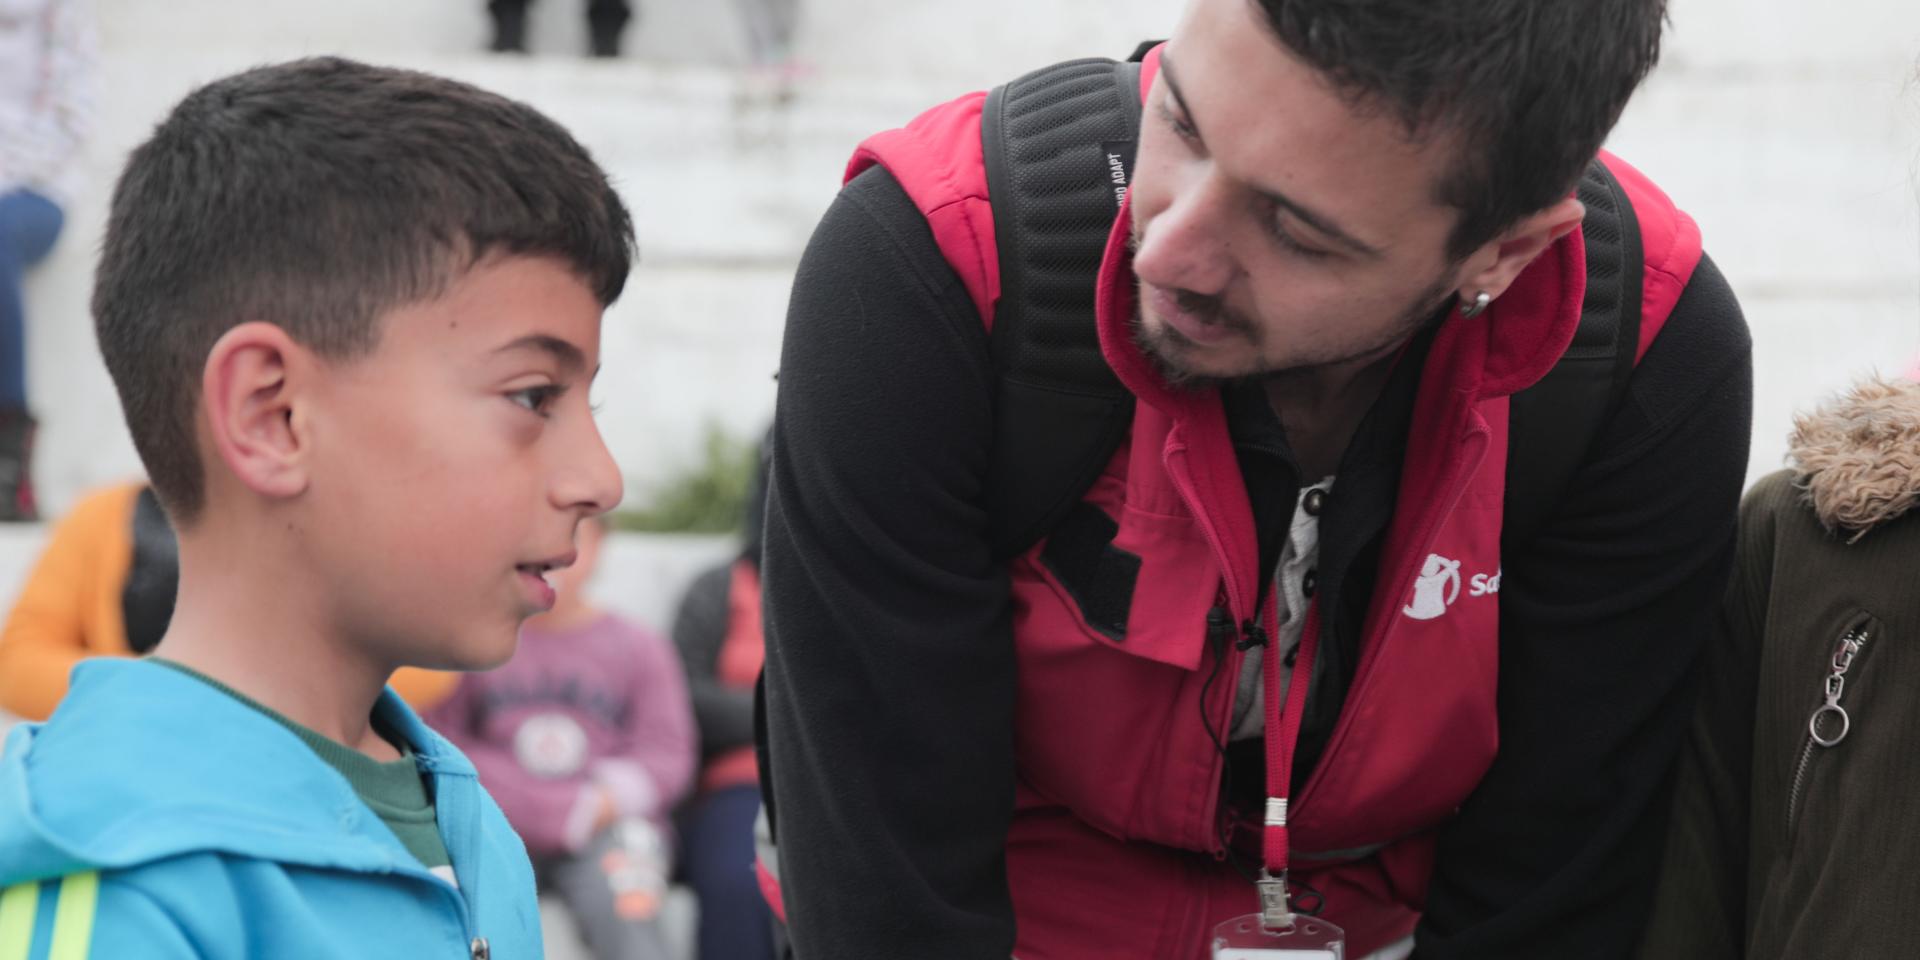 Un operatore che si occupa di salute mentale e supporto psicosociale di Save the Children parla con un bambino colpito dal terremoto in Turchia